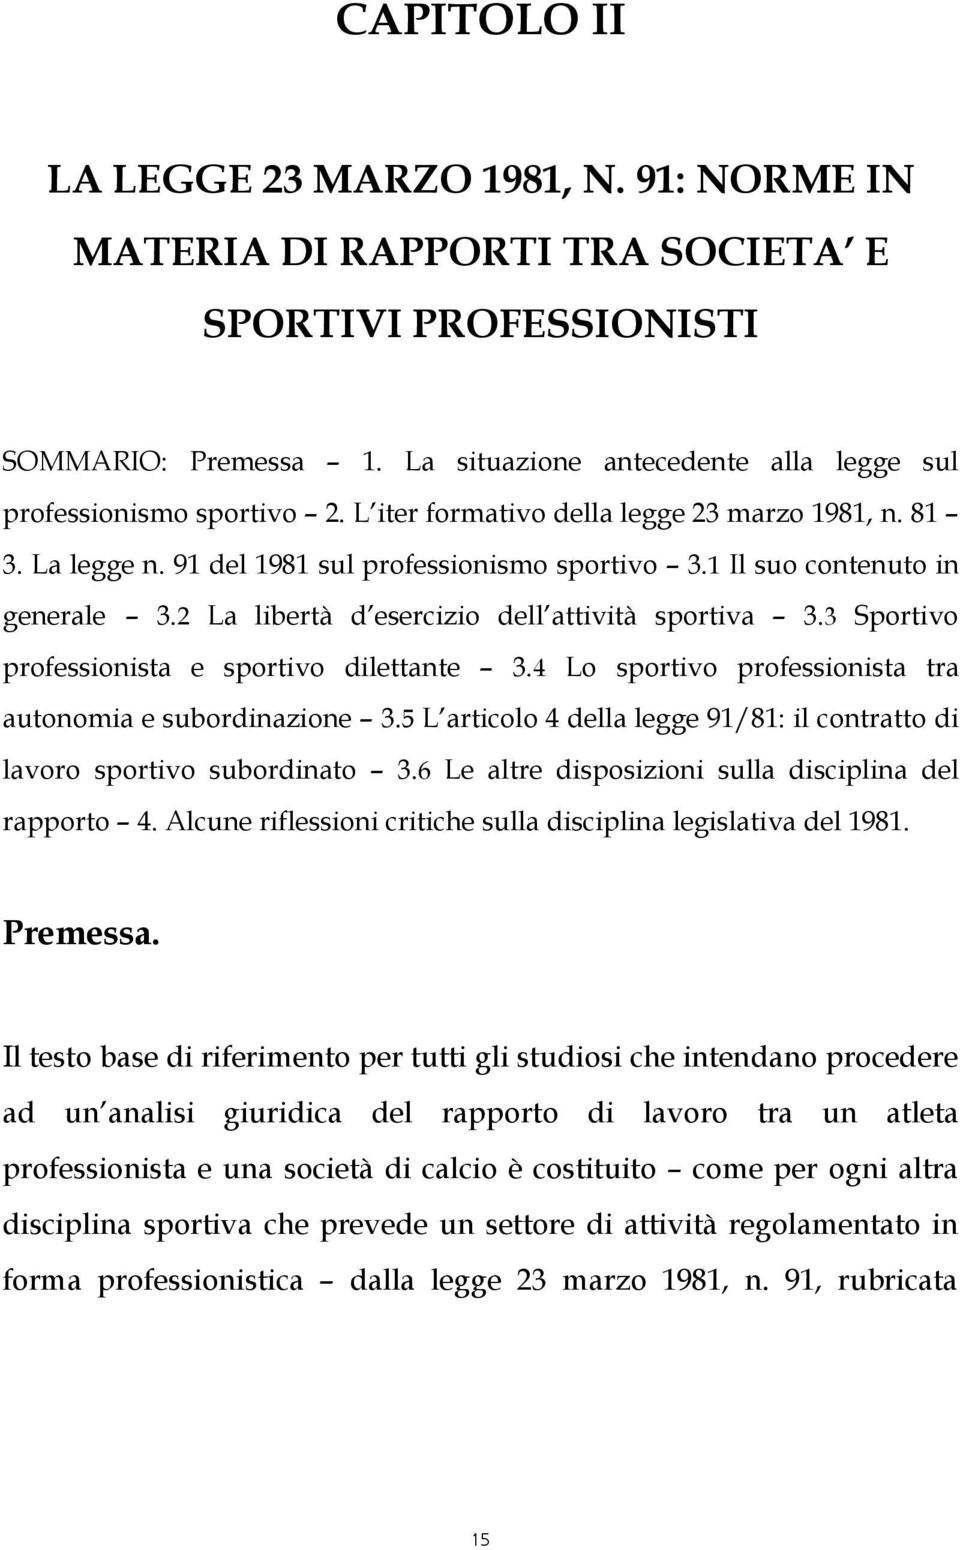 3 Sportivo professionista e sportivo dilettante 3.4 Lo sportivo professionista tra autonomia e subordinazione 3.5 L articolo 4 della legge 91/81: il contratto di lavoro sportivo subordinato 3.